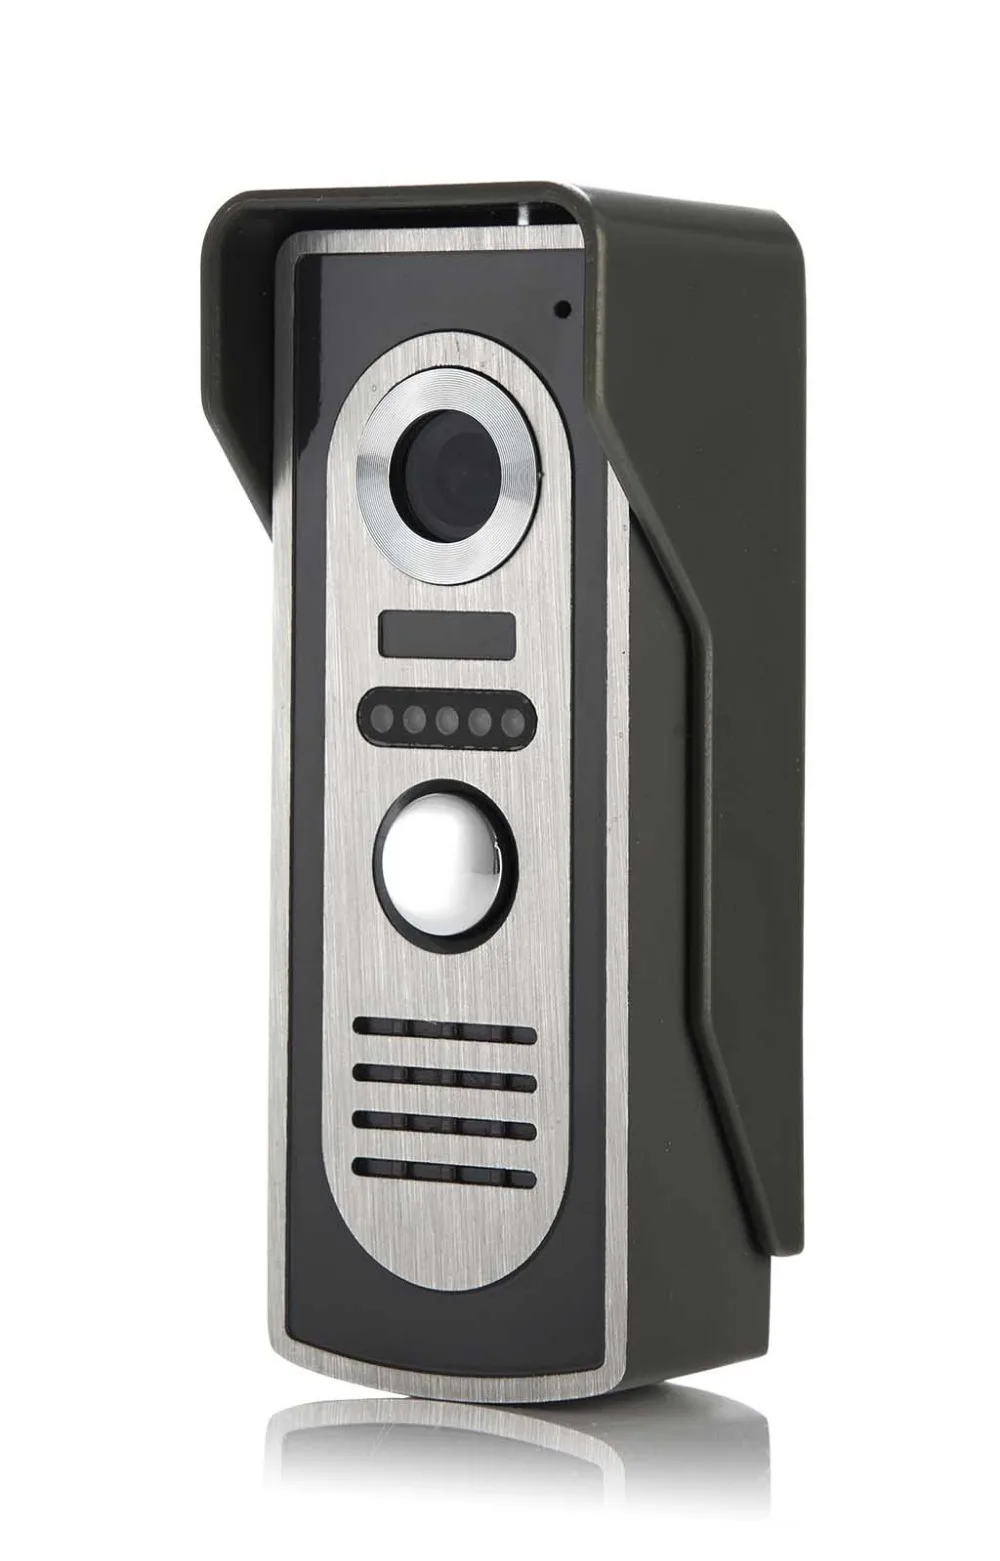 SmartYIBA видео домофон 7''Inch Проводной Видео Домофонные визуальные видеодомофон монитор Камера комплект для дома безопасности